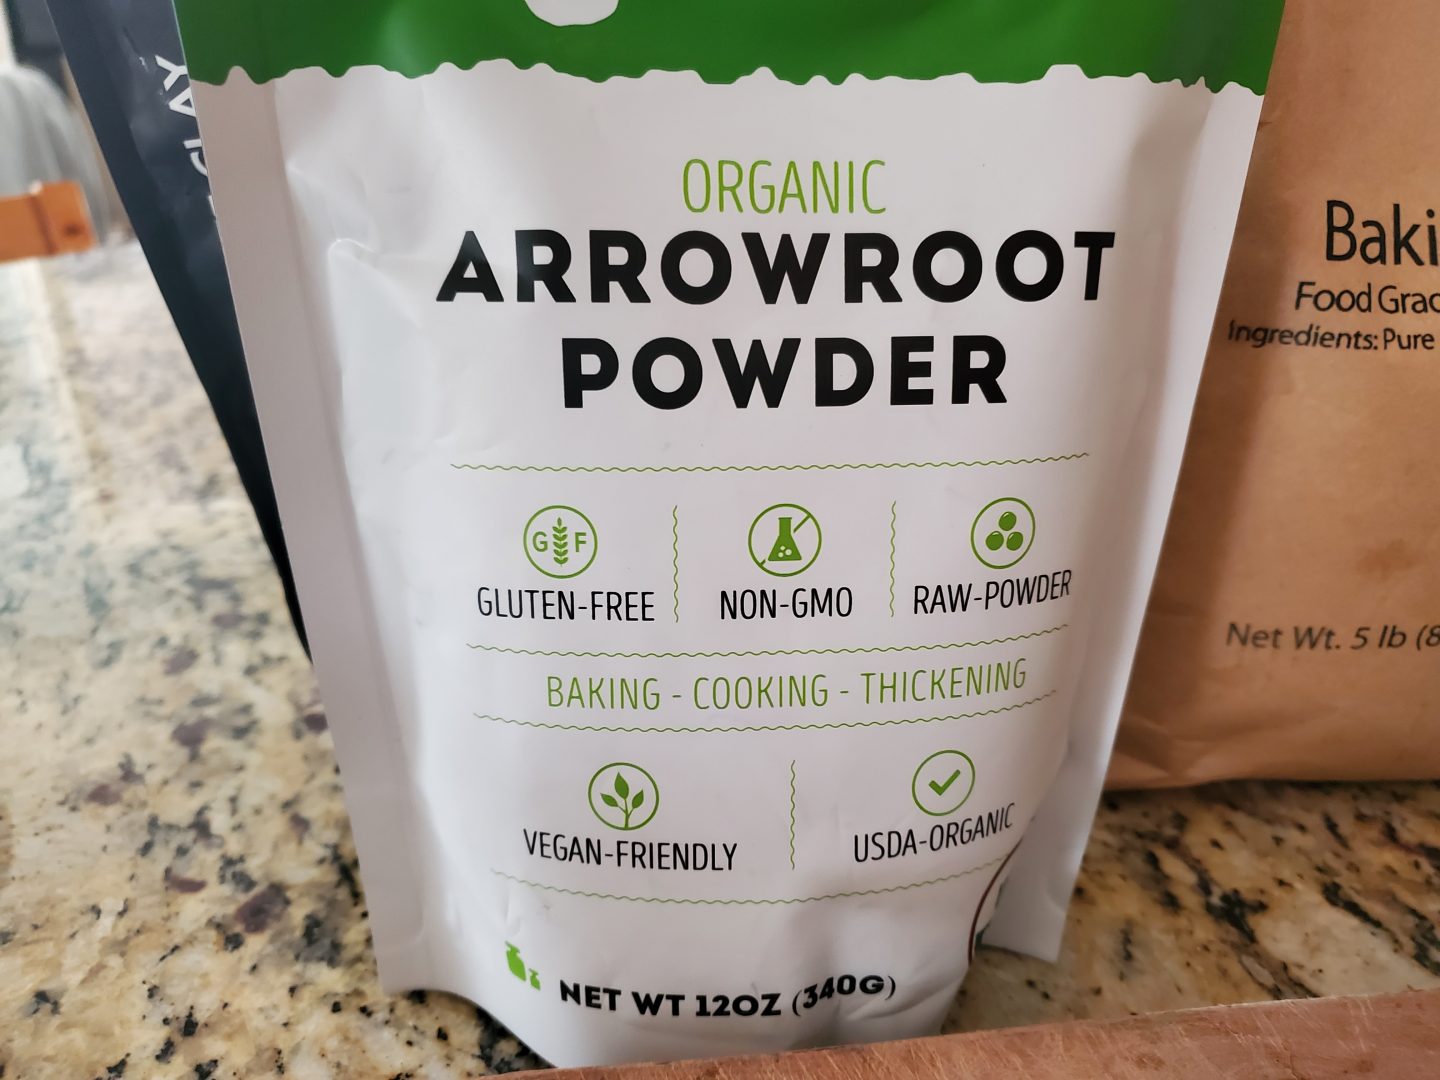 Arrowroot powder for making homemade deodorant.